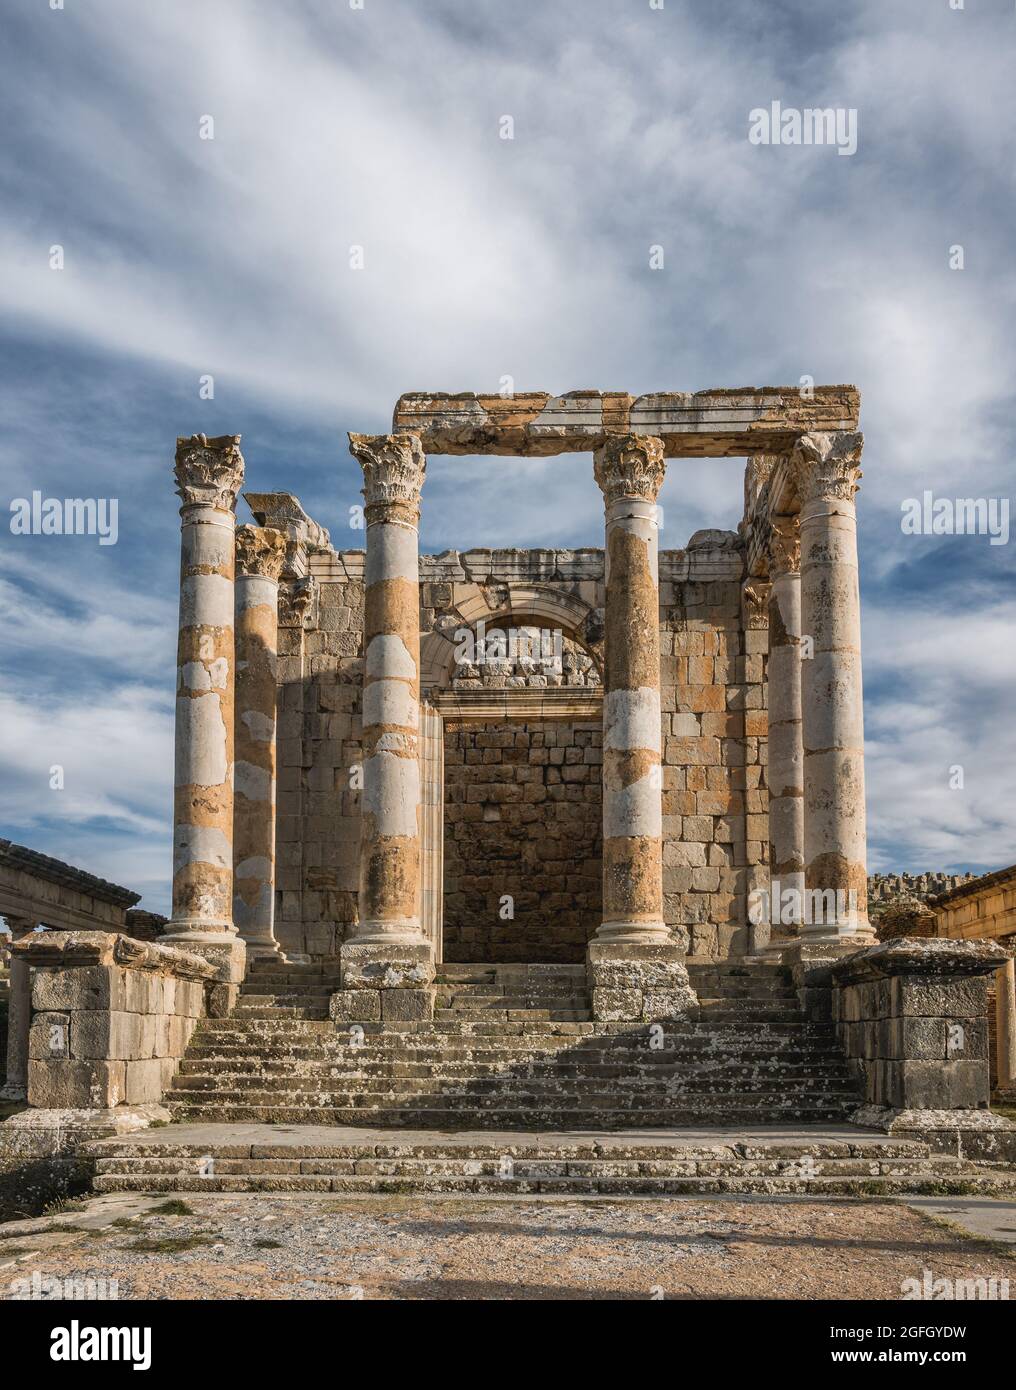 Ville romaine de Djemila, Algérie - Patrimoine mondial de l'UNESCO Banque D'Images